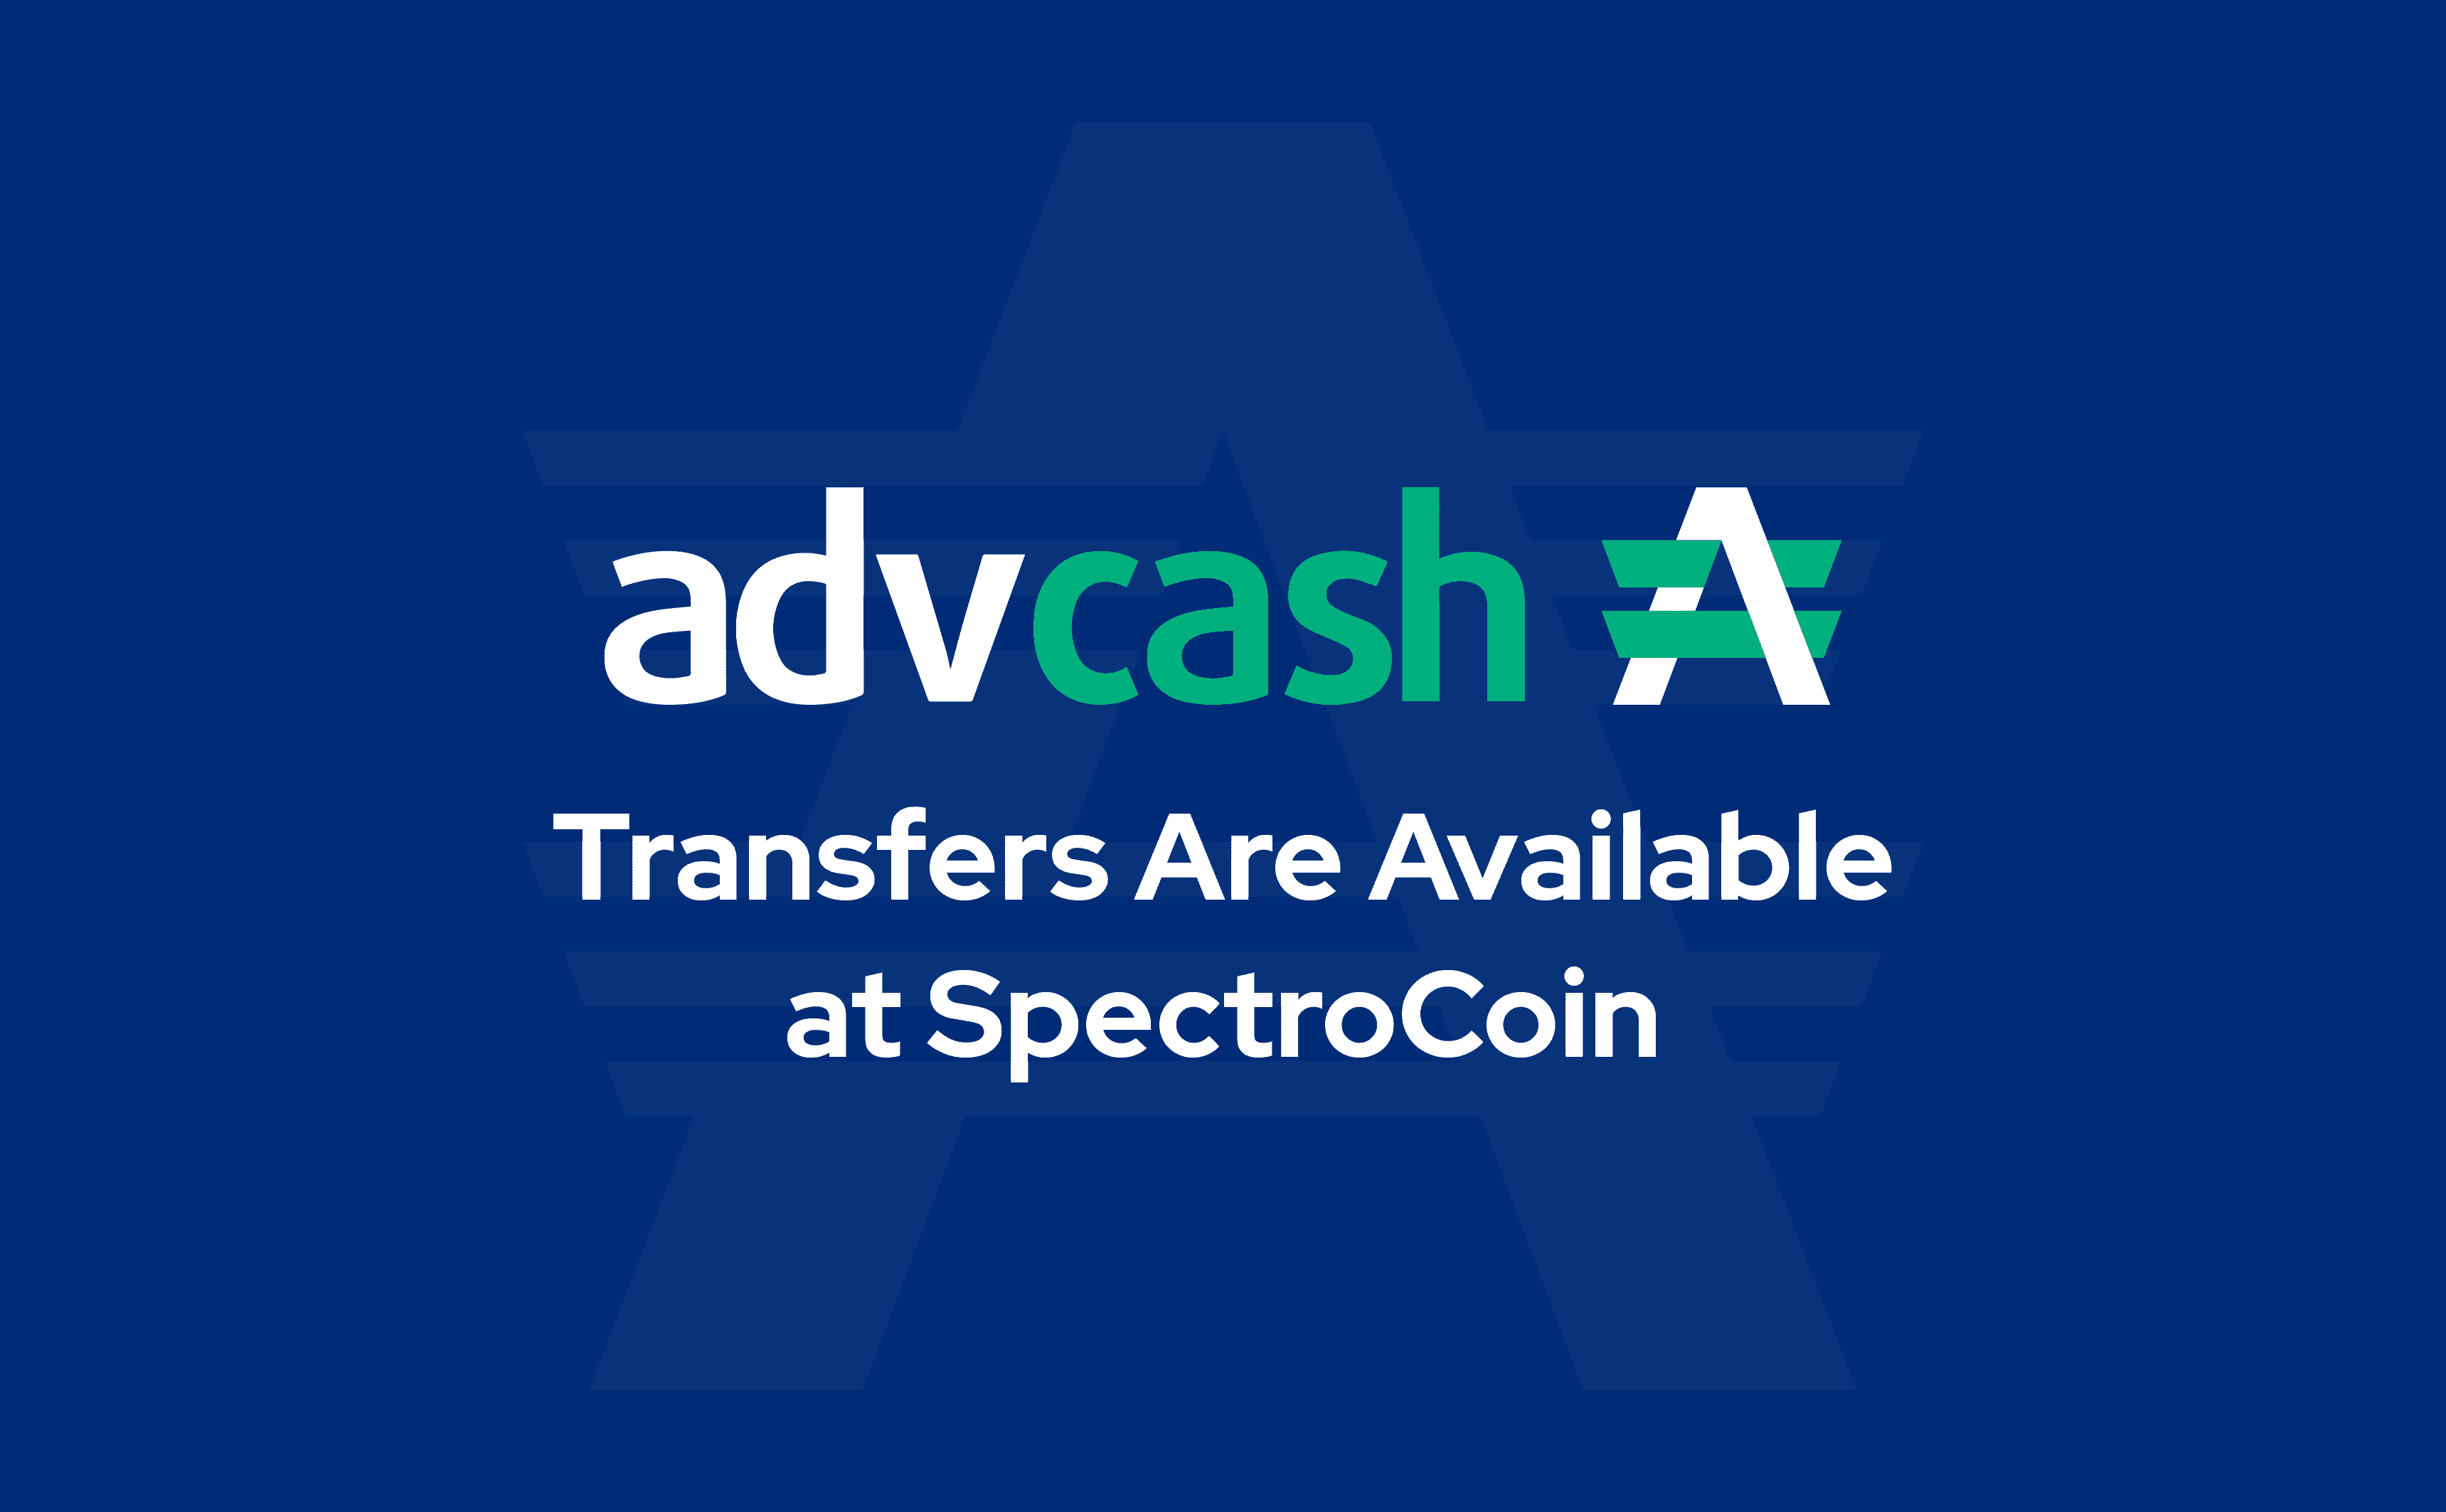 U kunt al Bitcoin kopen met Advcash bij SpectroCoin.